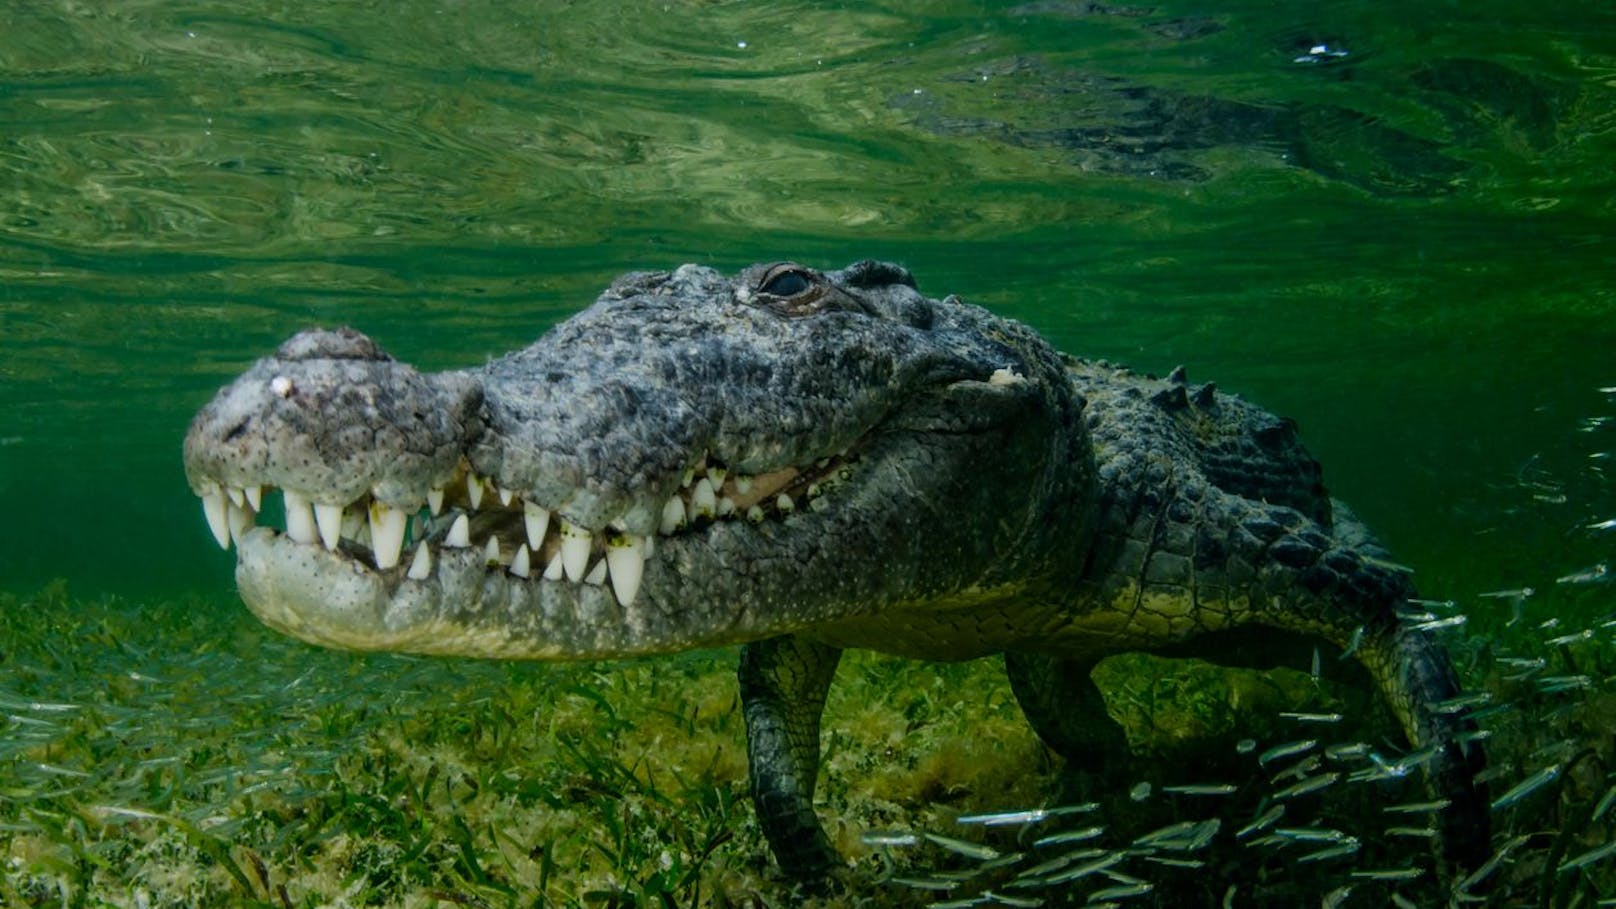 Mann überlebt Krokodil - beißt Tier ins Augenlid